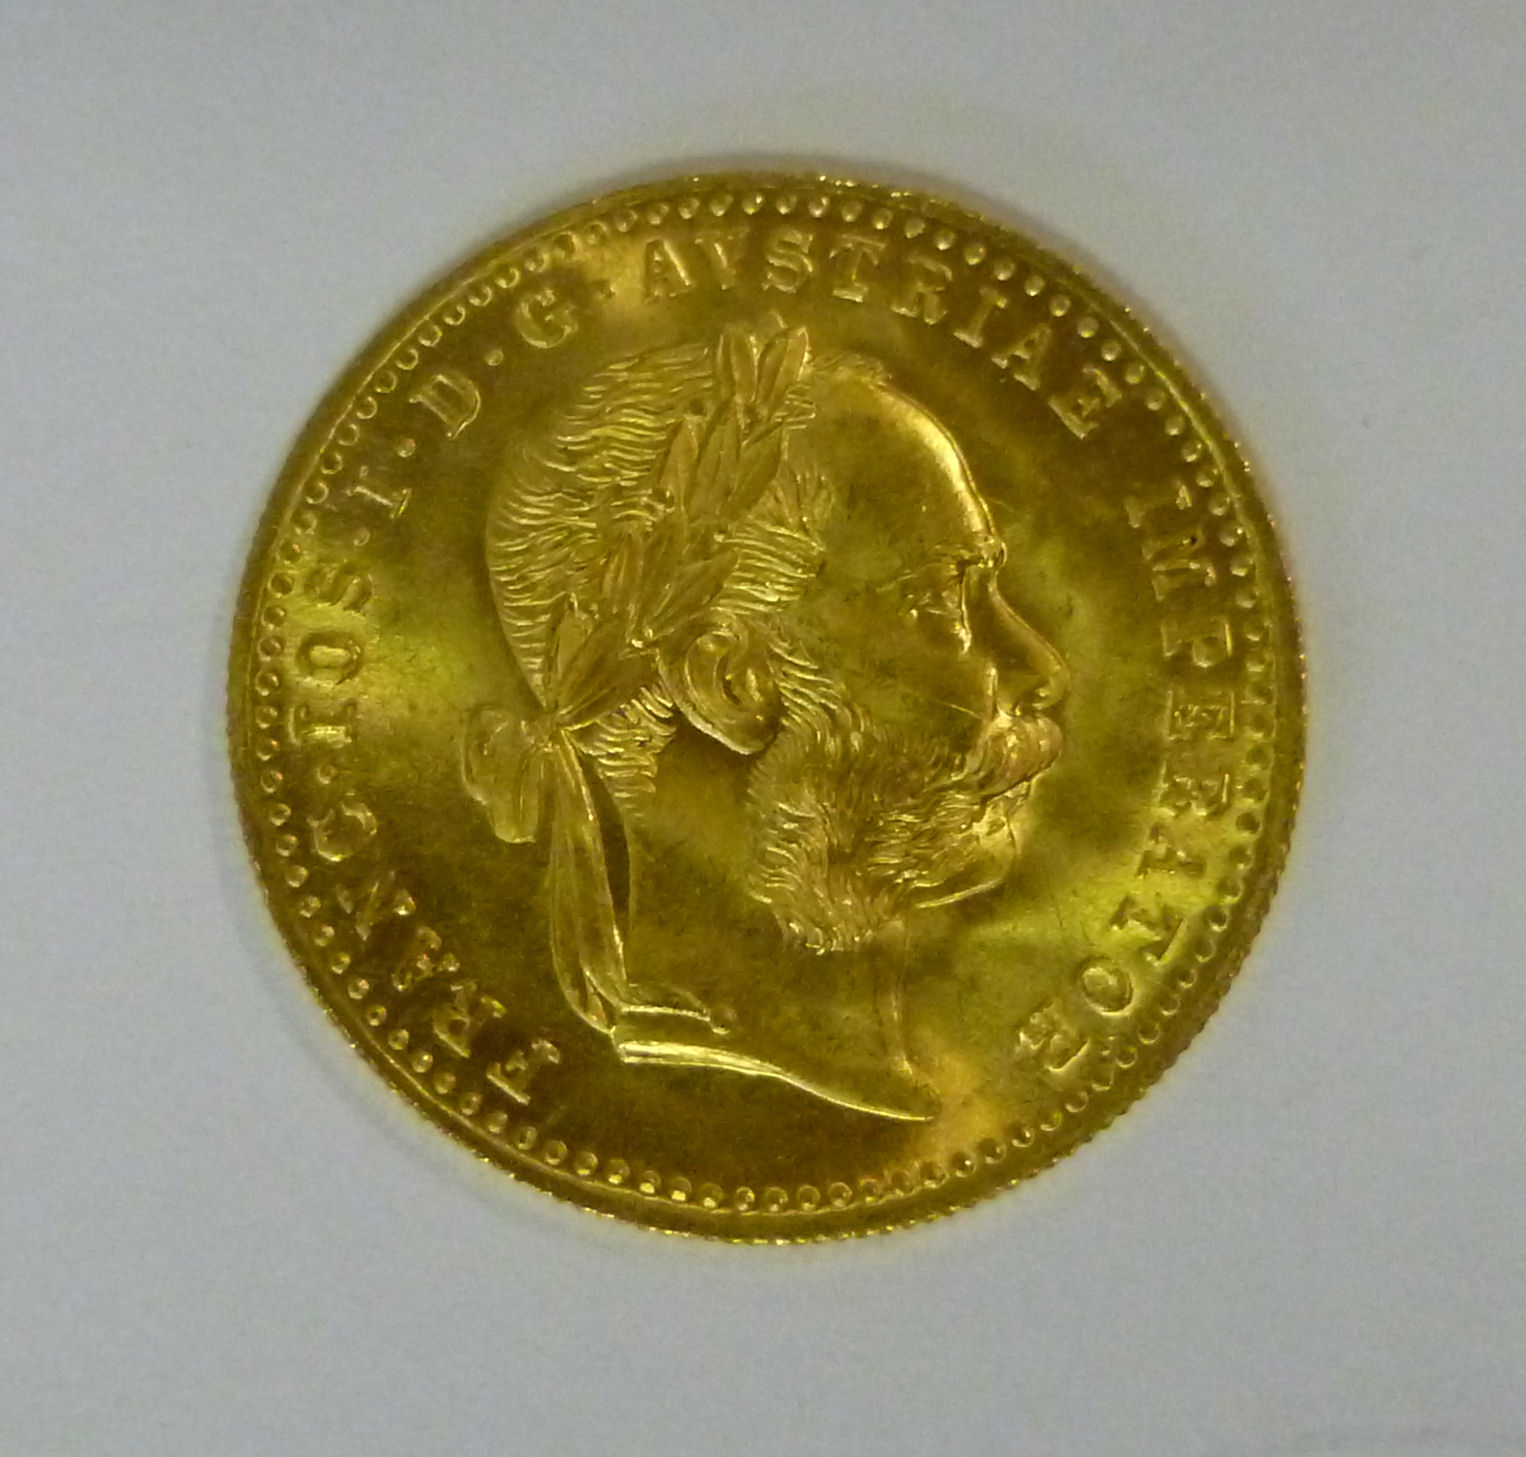 An Austrian Ducat gold coin (1915 re-str